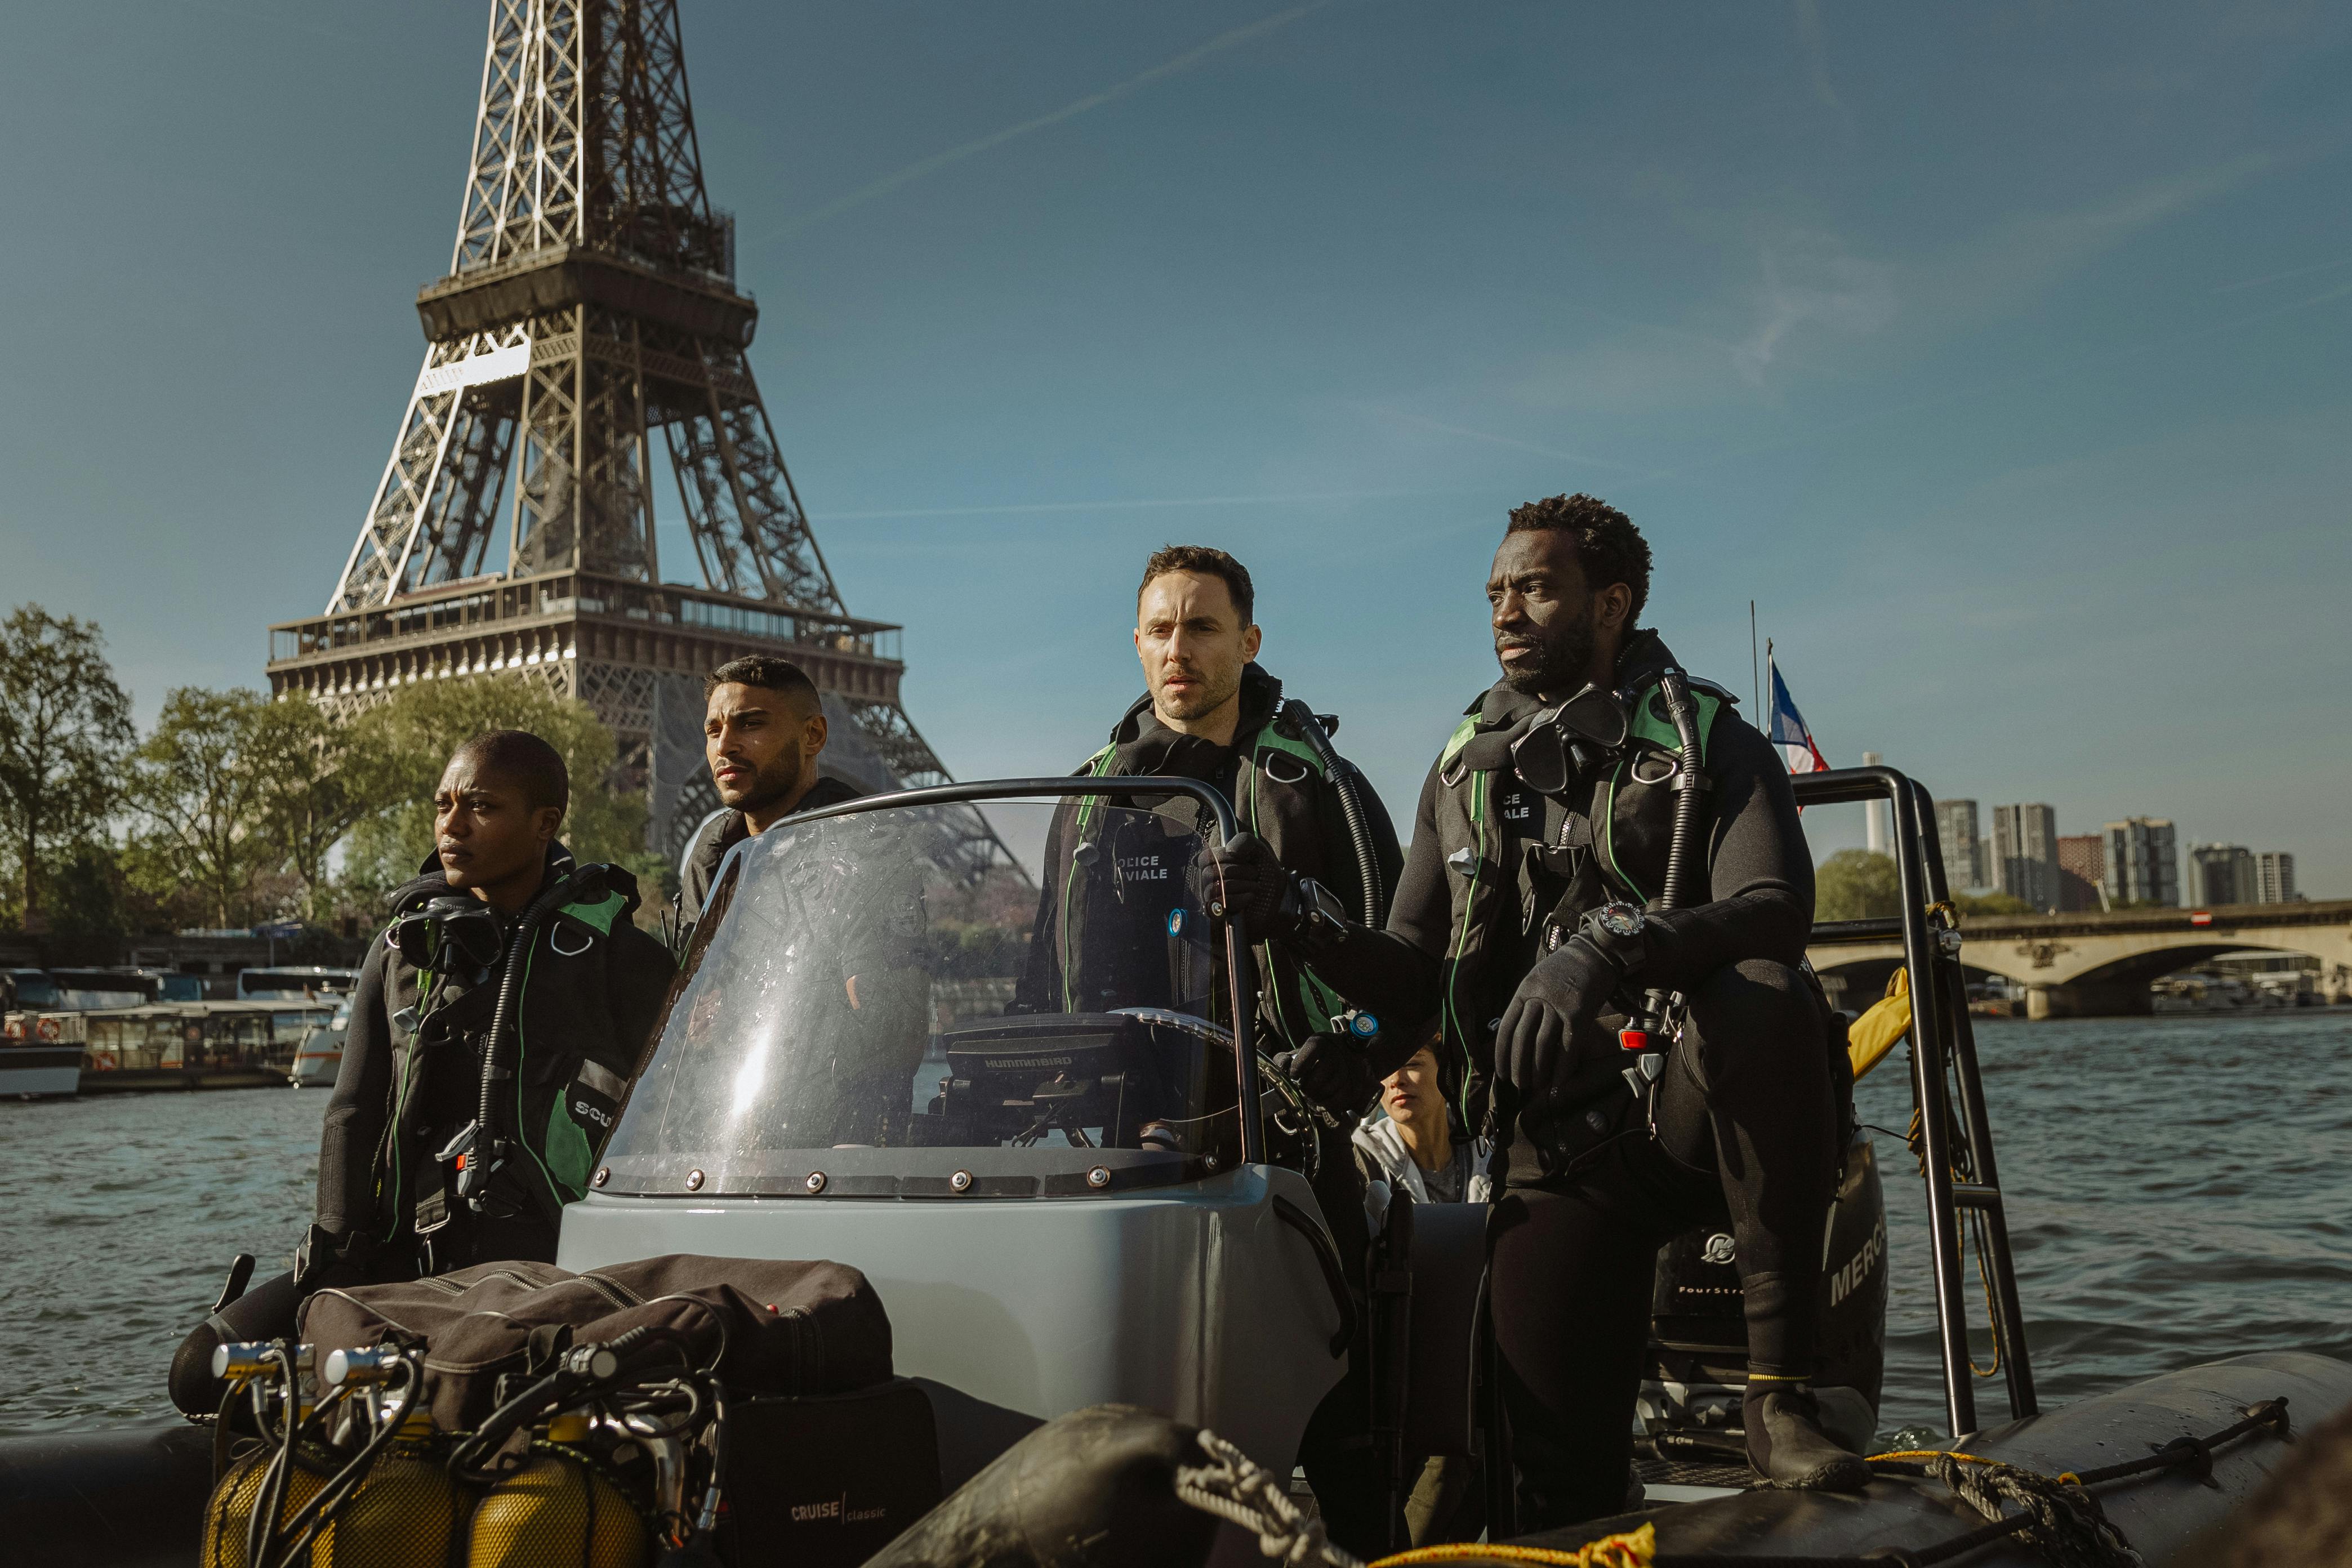 anmeldelse af 'Hajer i Paris' / 'Under Paris' på Netflix